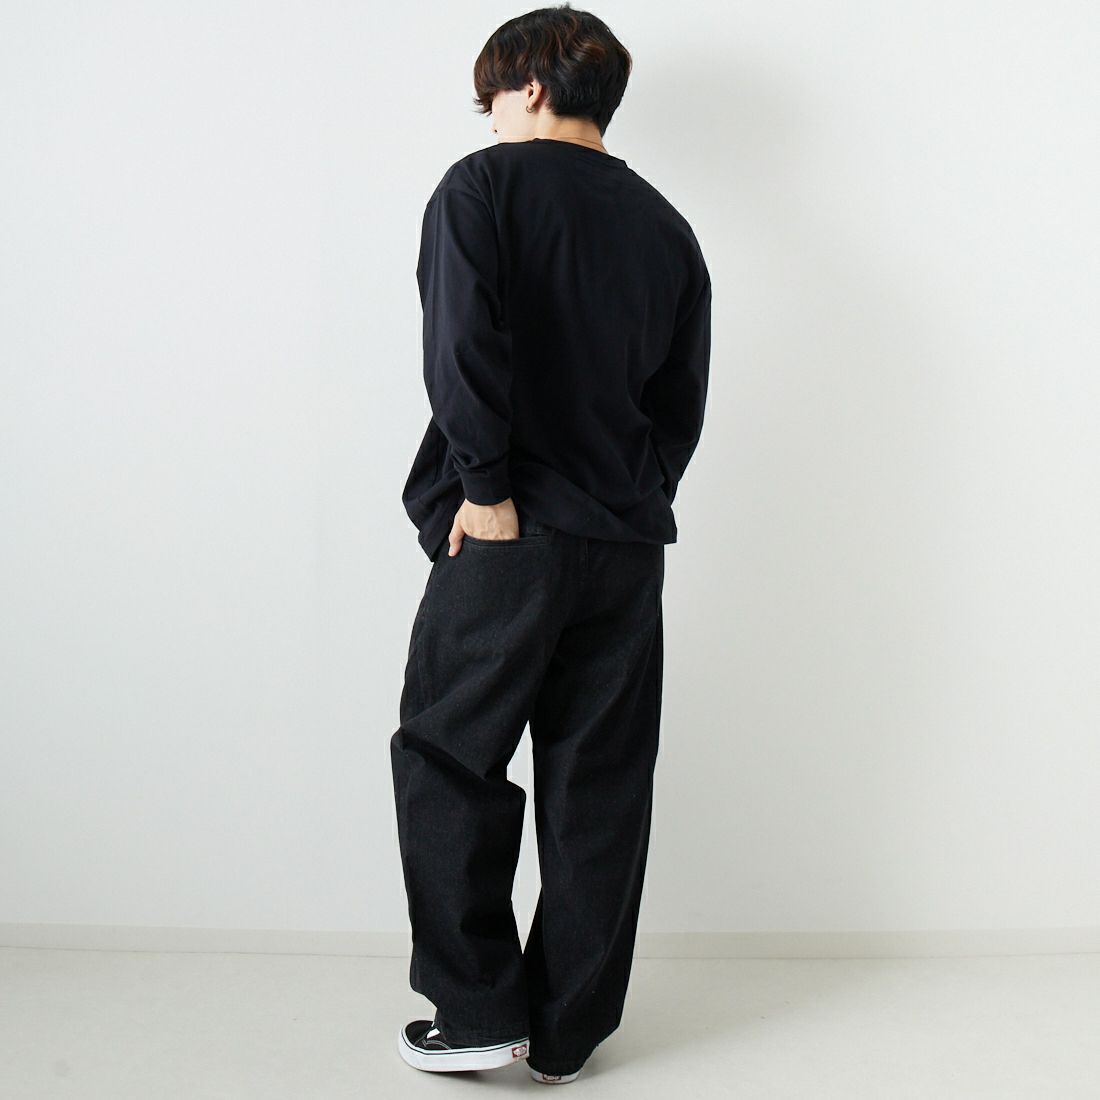 Jeans Factory Clothes [ジーンズファクトリークローズ] 2タックデニムワイドパンツ [JFC-224-052] BLACK USED &&モデル身長：169cm 着用サイズ：S&&